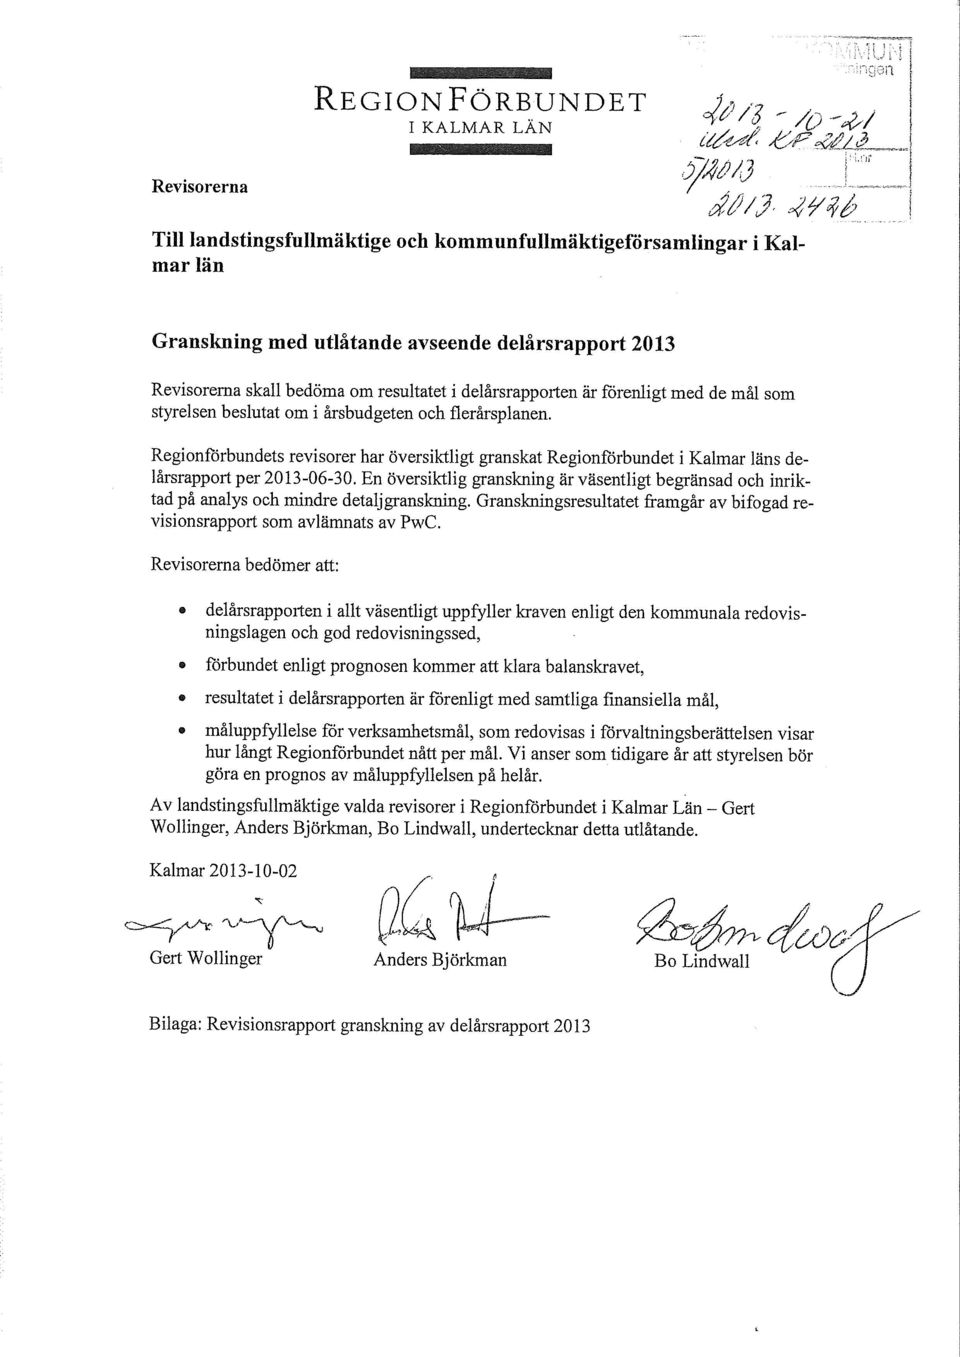 forenligt med de mål som styrelsen beslutat om i årsbudgeten och flerårsplanen. Regionfårbundets revisorer har översiktligt granskat Regionfårbundet i Kalmar läns delårsrapport per 2013-06-30.